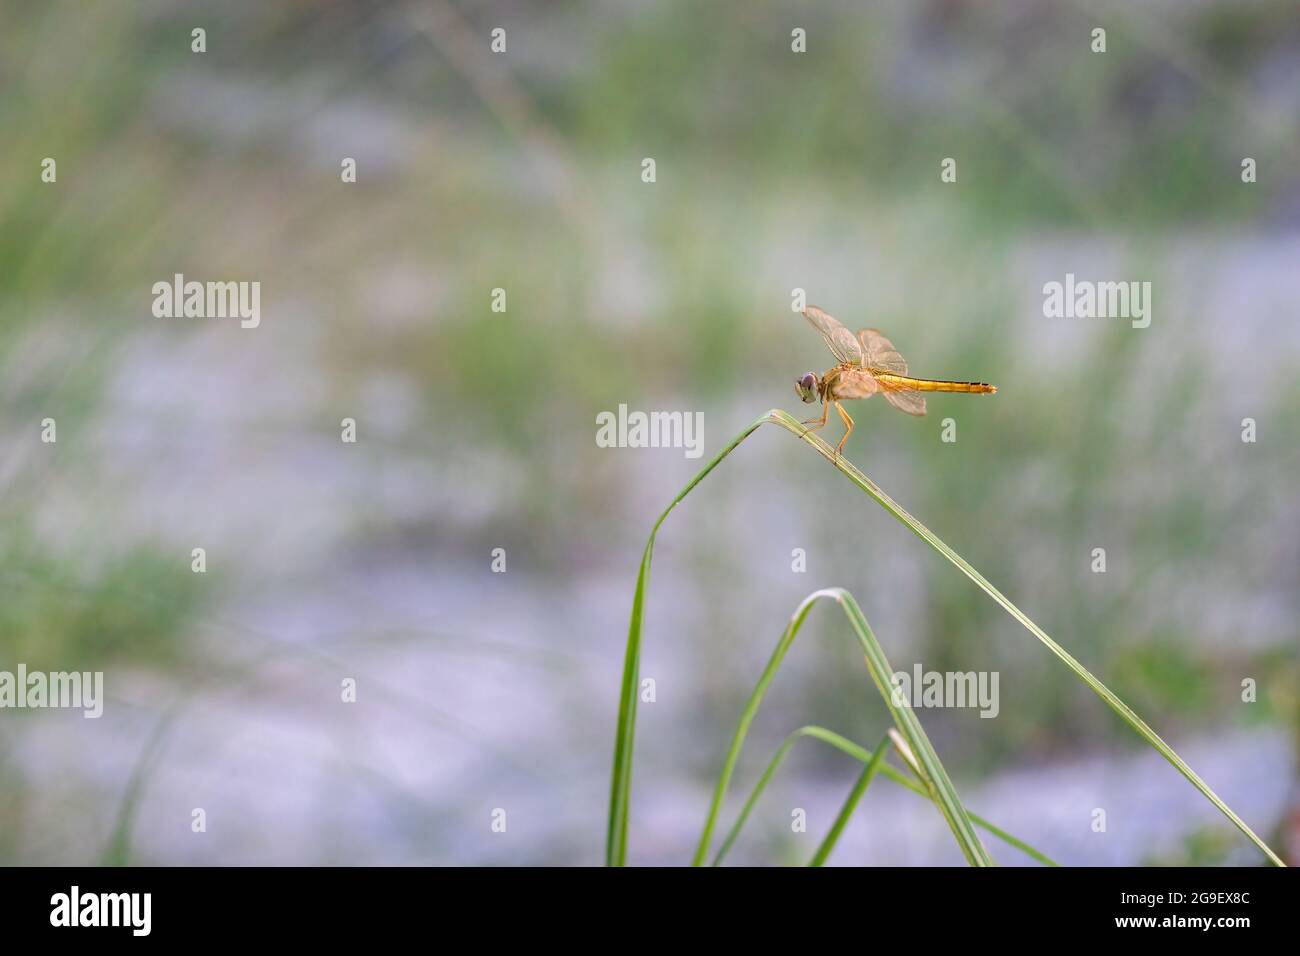 Bella libellula arancione con ali trasparenti seduti su una foglia di lama selvaggia Foto Stock